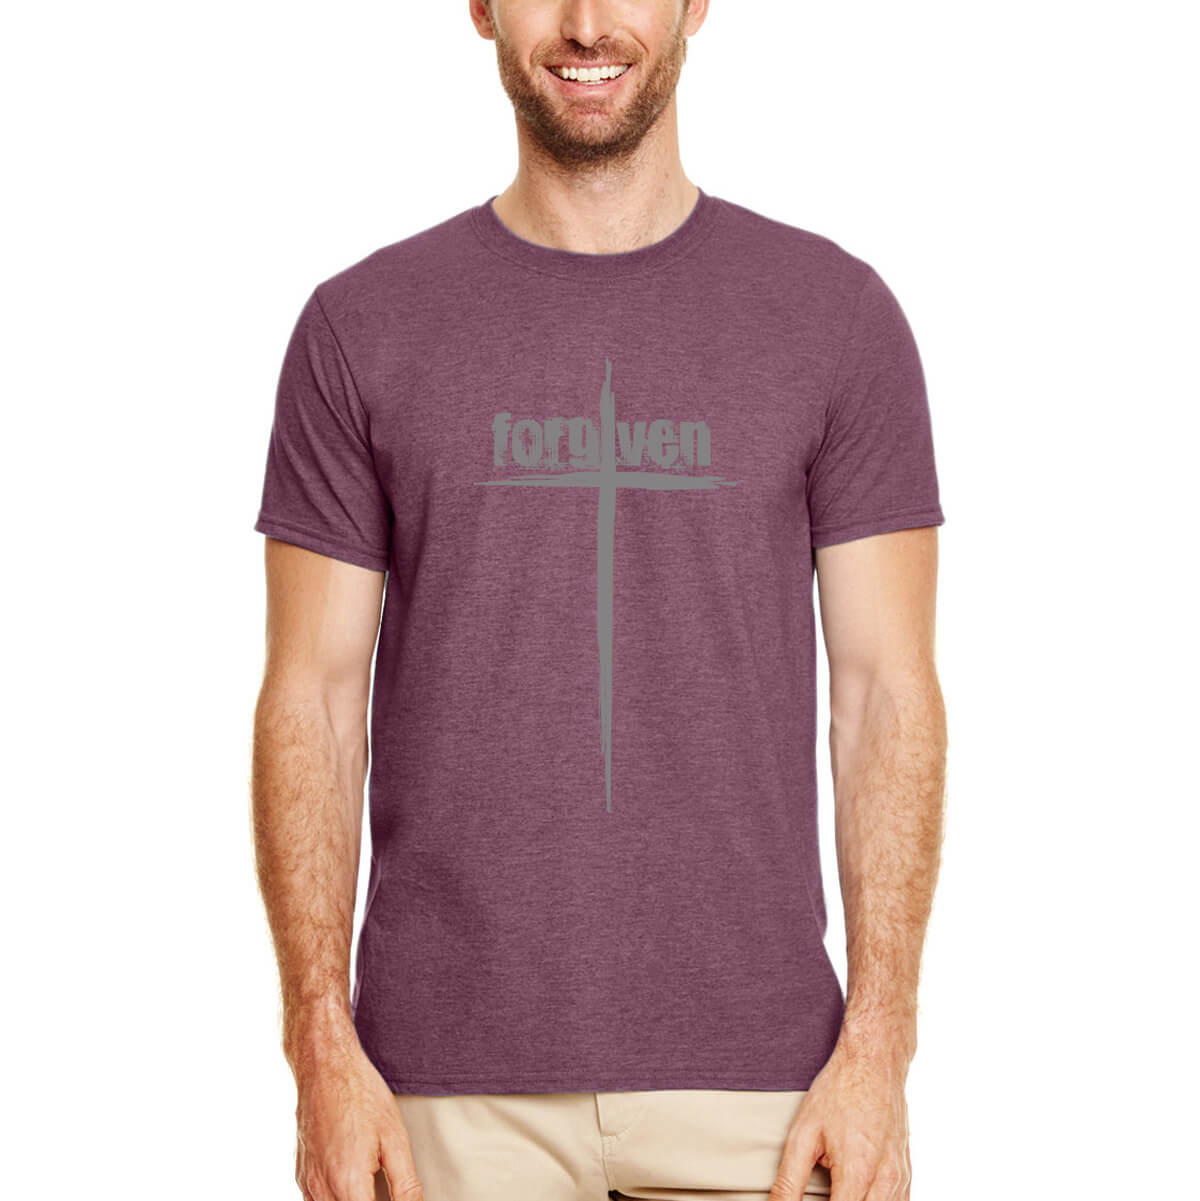 Forgiven Cross Unisex T-Shirt FINAL SALE